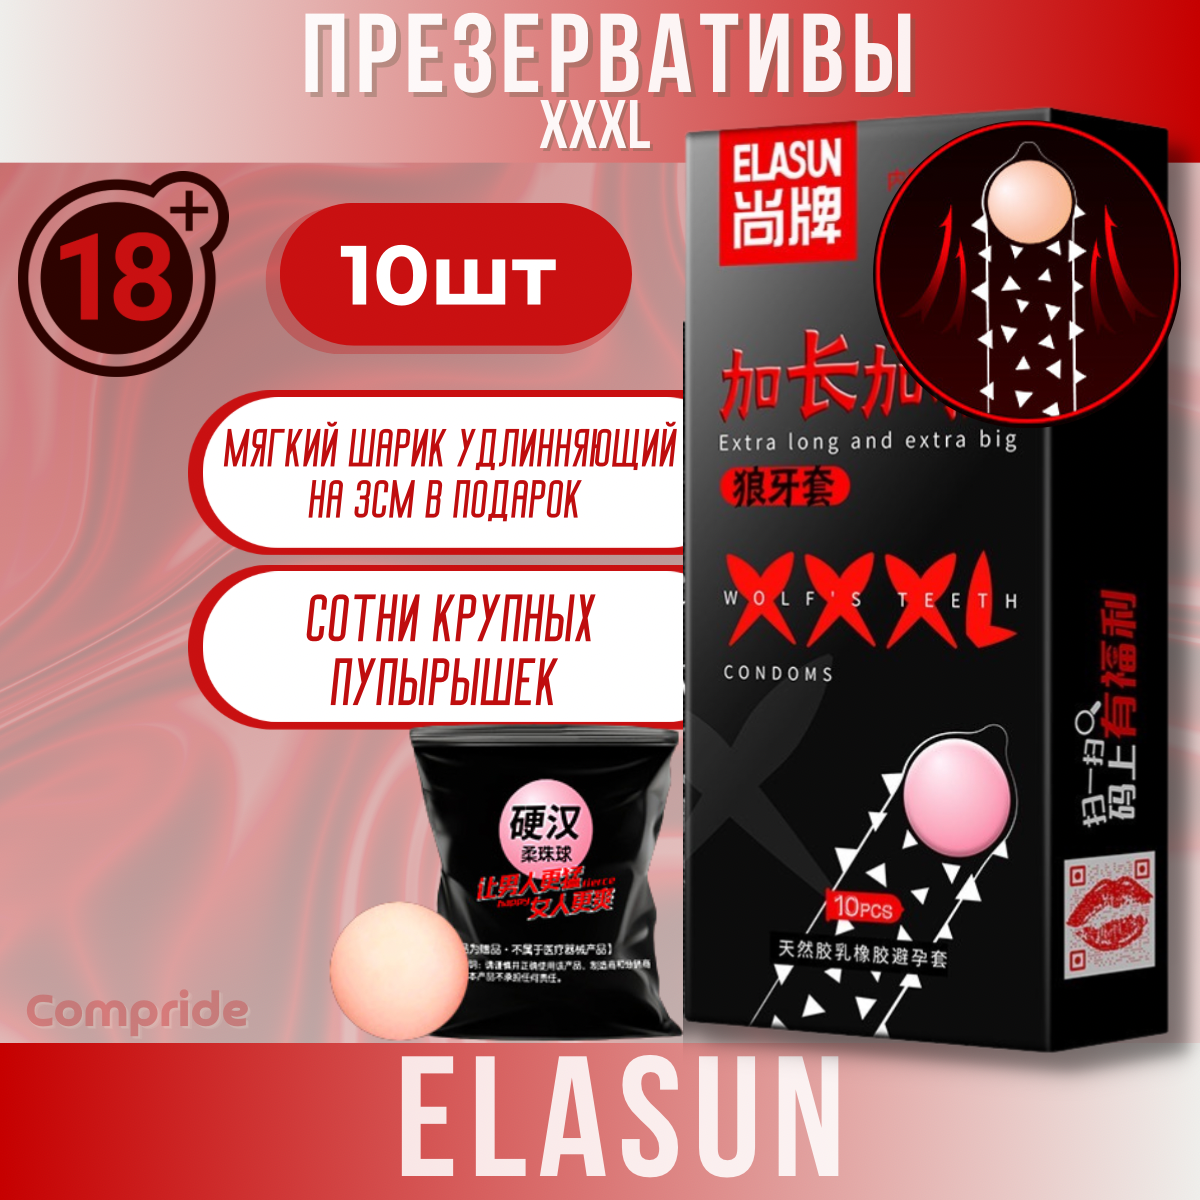 Презервативы Elasun XXXL, 10 шт